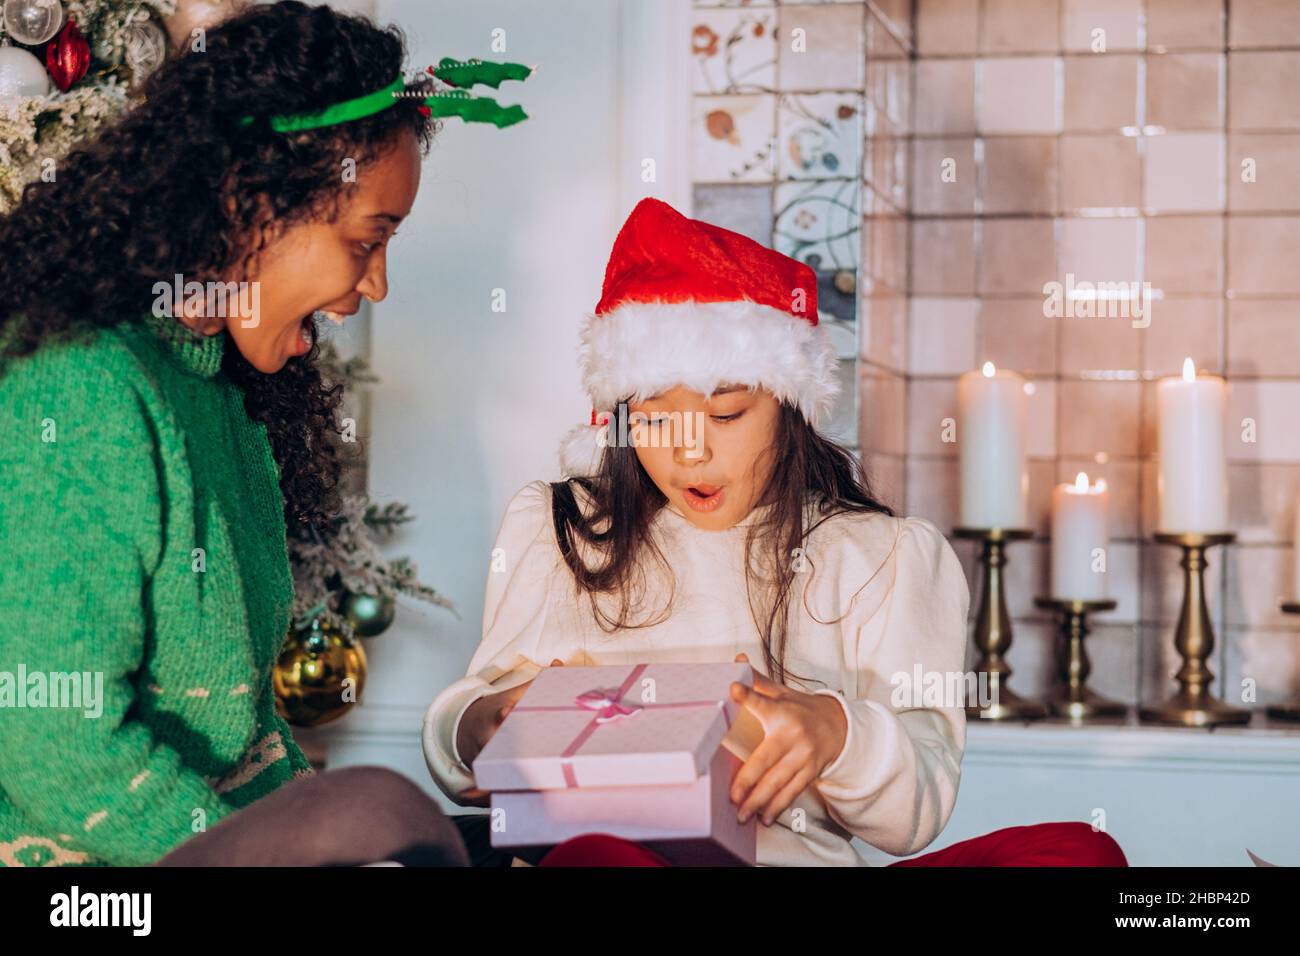 Una niña en un sombrero rojo abre un regalo de Navidad de mamá contra el fondo de un árbol de Navidad y velas, mamá se sienta cerca y espera a su hija para abrir el regalo Foto de stock